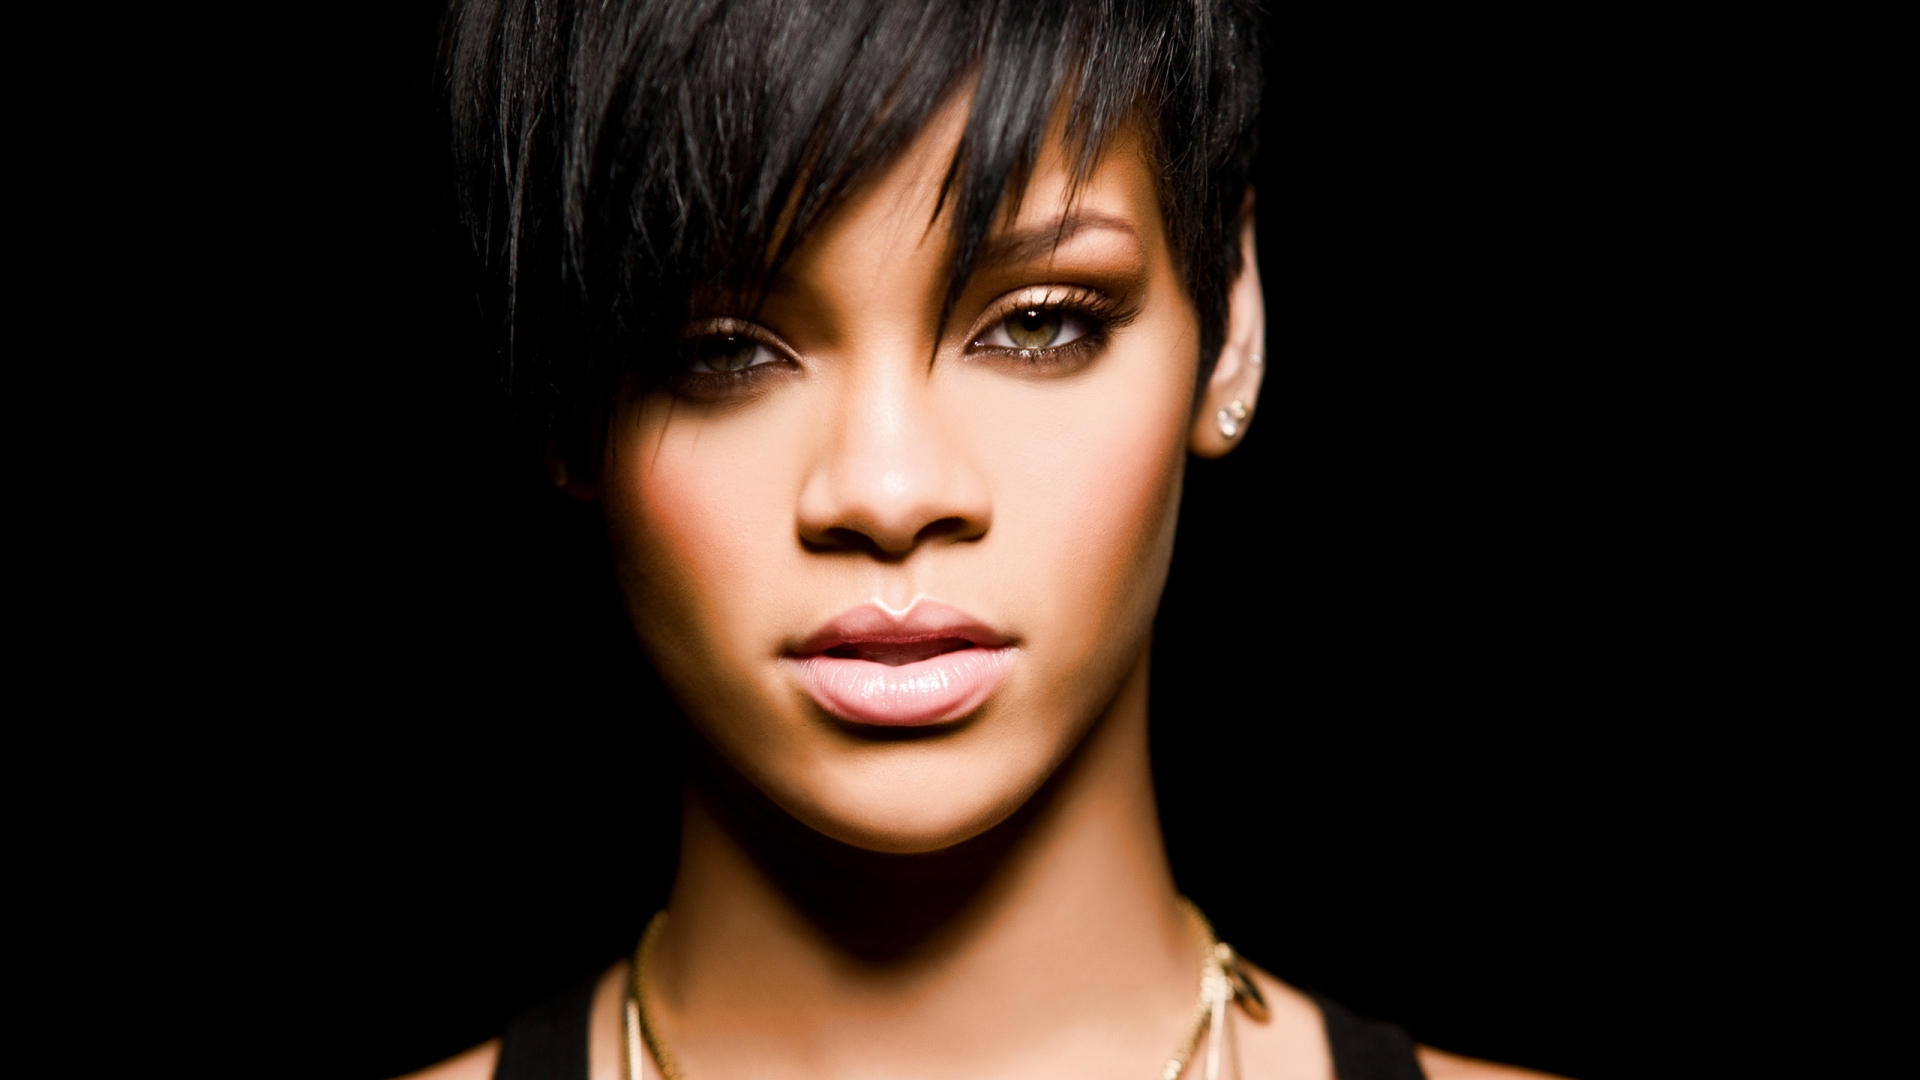 Rihanna for 1920 x 1080 HDTV 1080p resolution